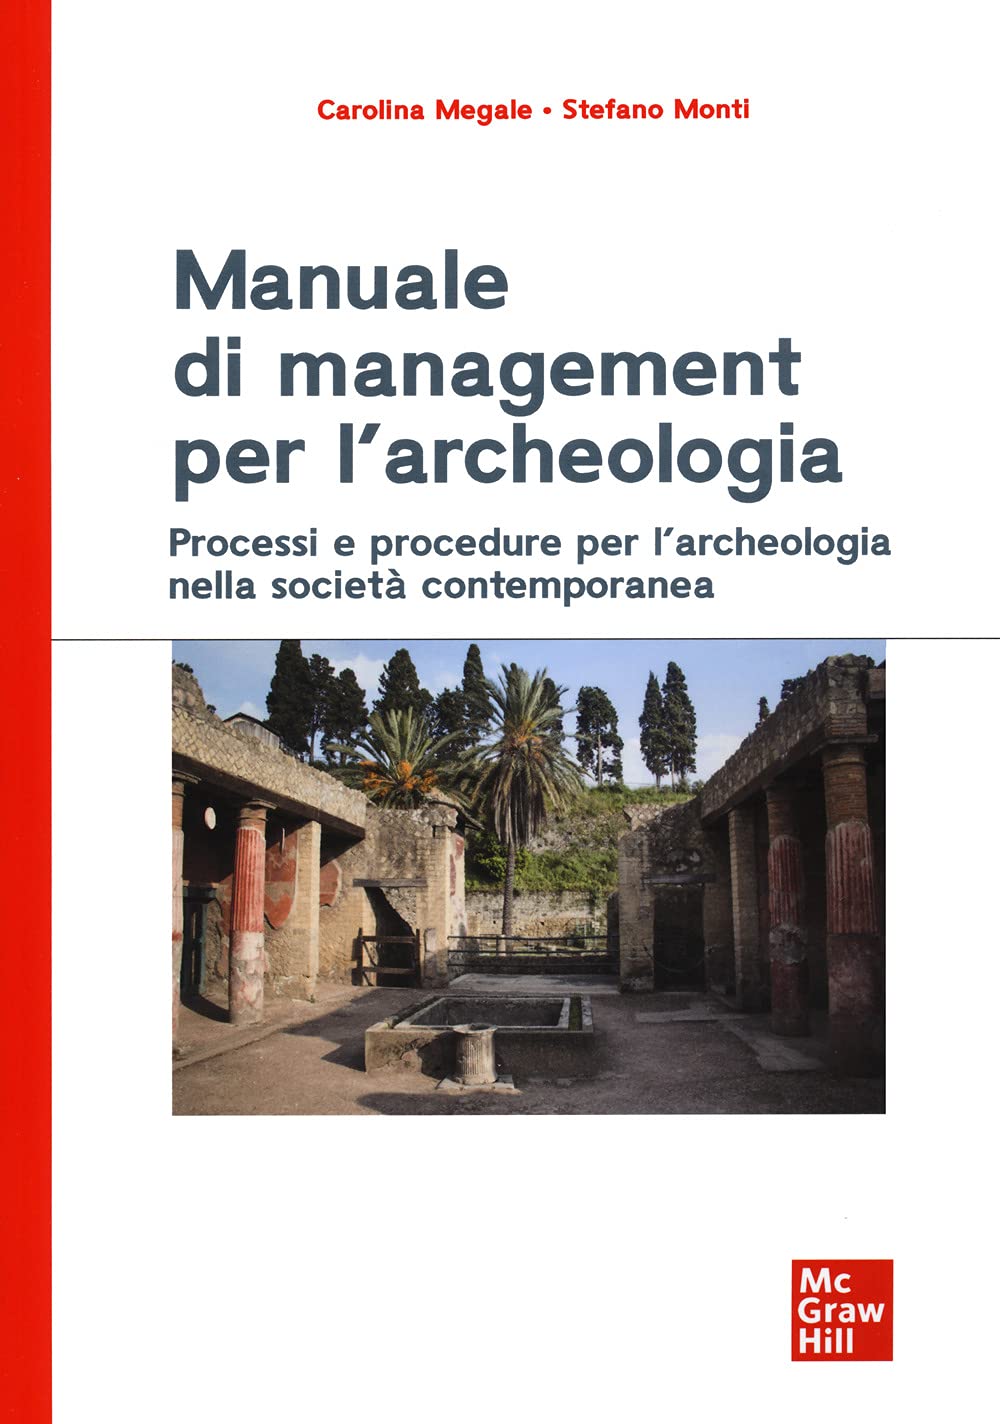 Stefano Monti e Carolina Megale - Manuale di Management per l'archeologia (McGraw Hill, Milano 2022)